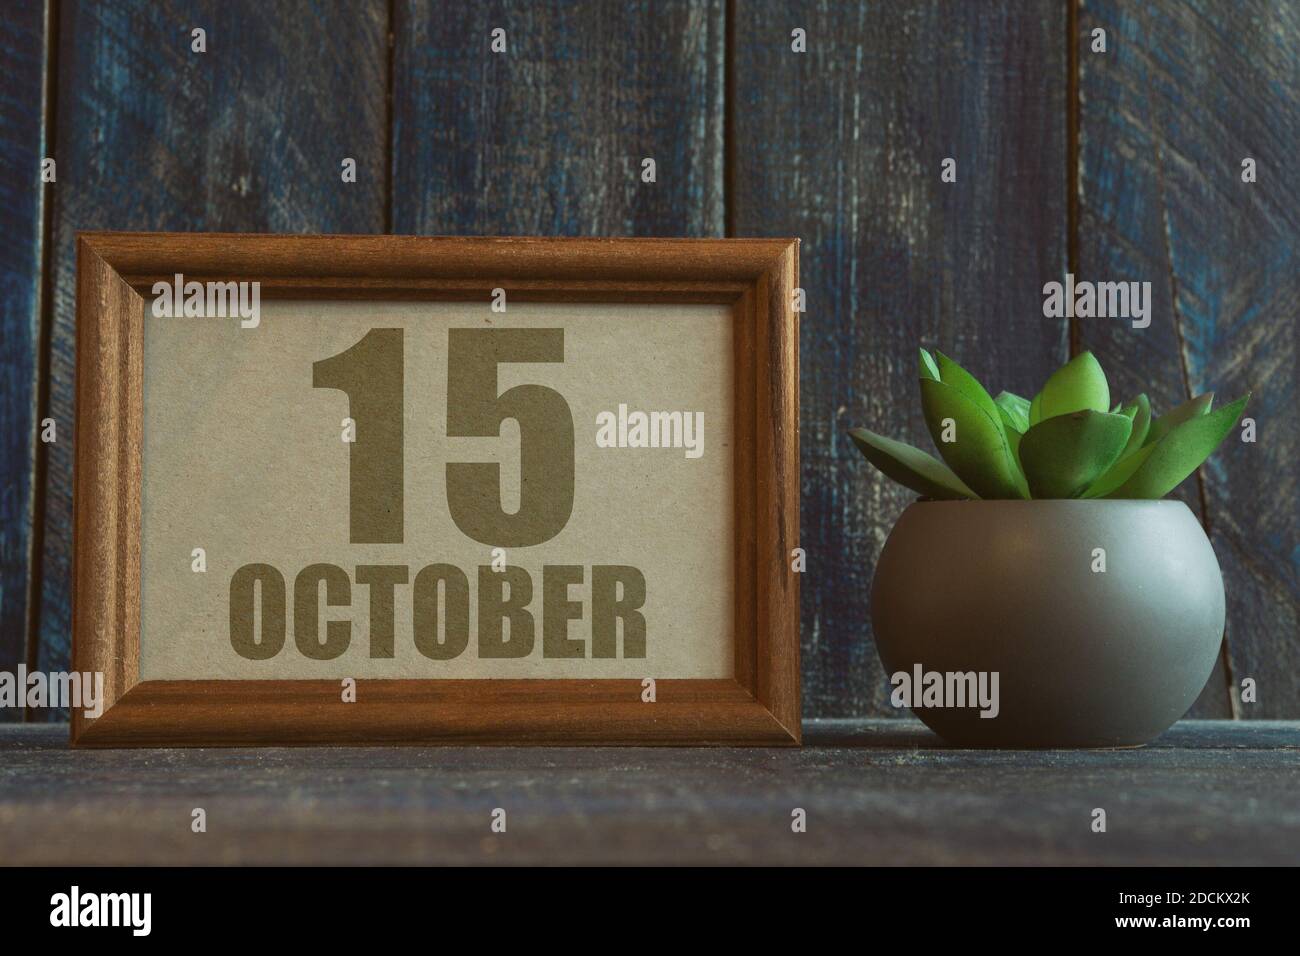 oktober. Tag 15 des Monats, Datum im Rahmen neben Sukkulente auf Holzhintergrund Herbstmonat, Tag des Jahres Konzept Stockfoto